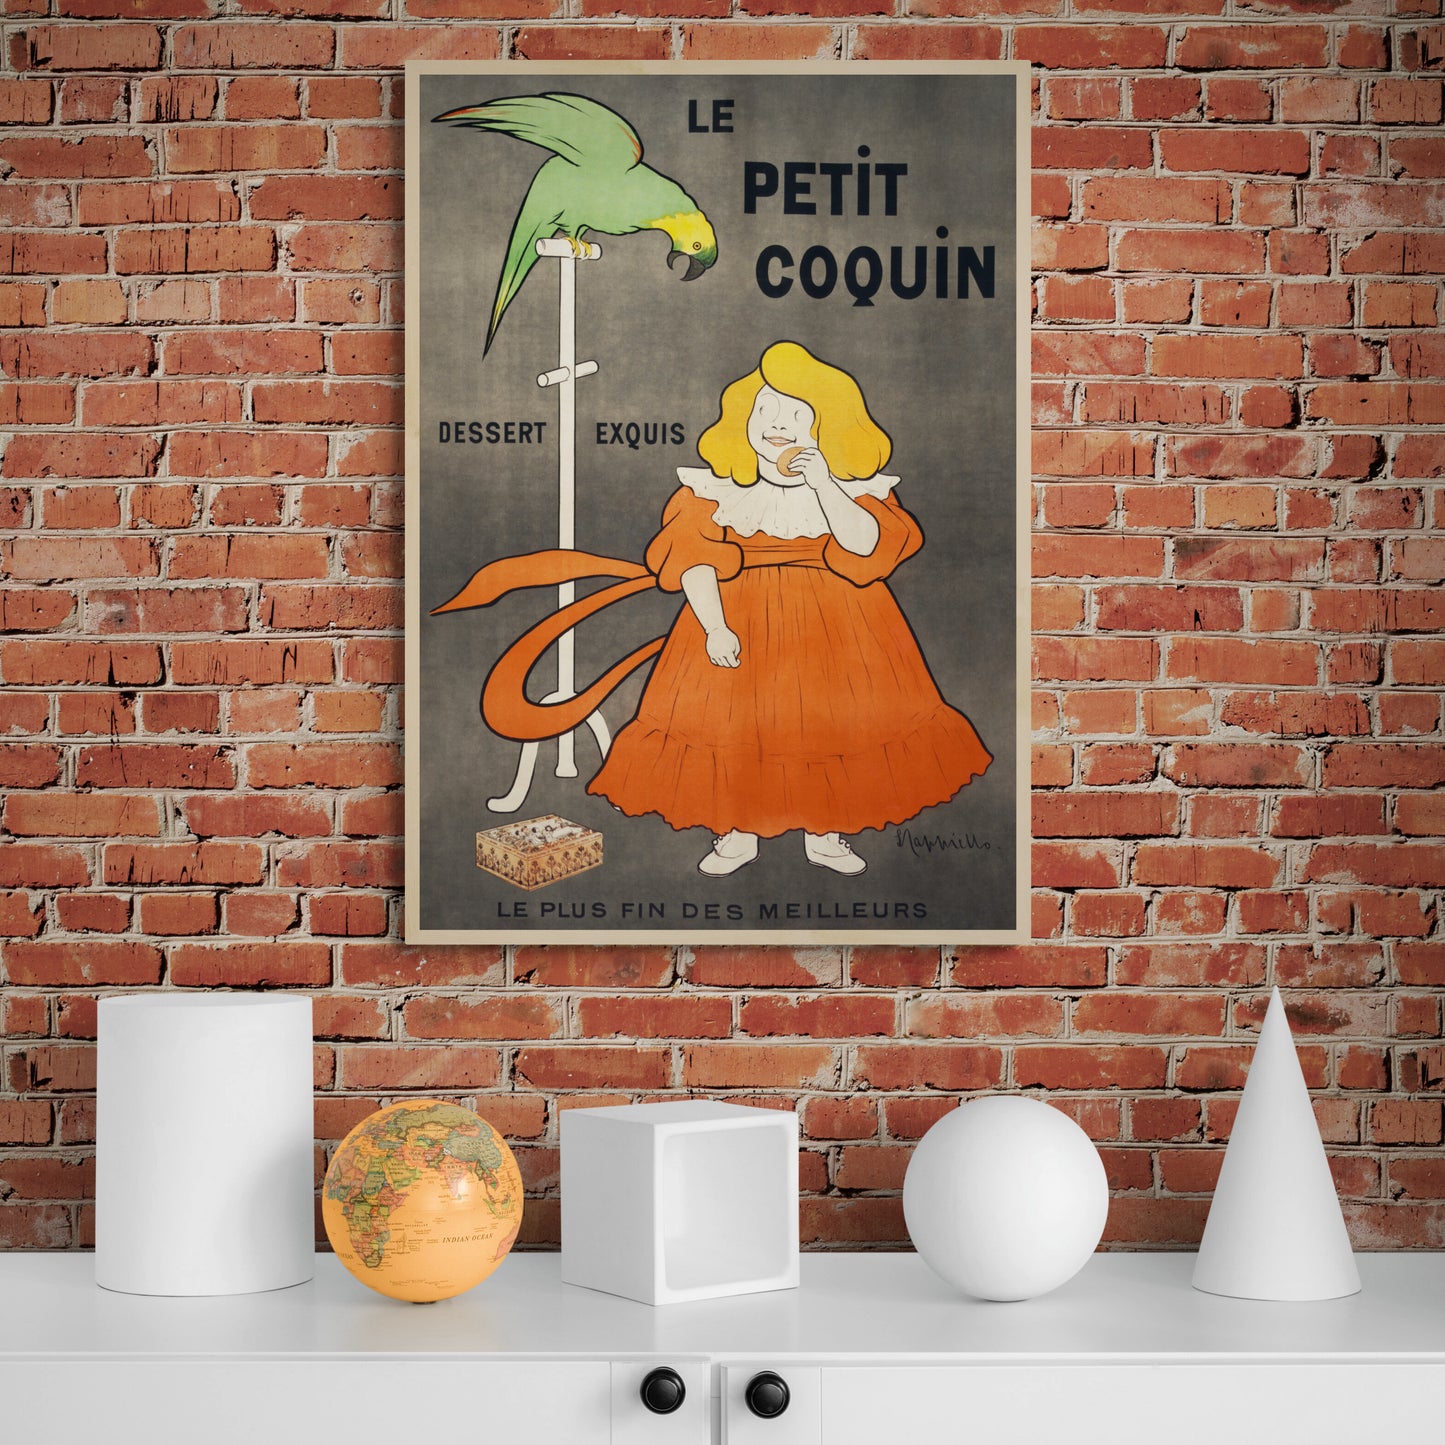 Le Petit Coquin by Leonetto Cappiello